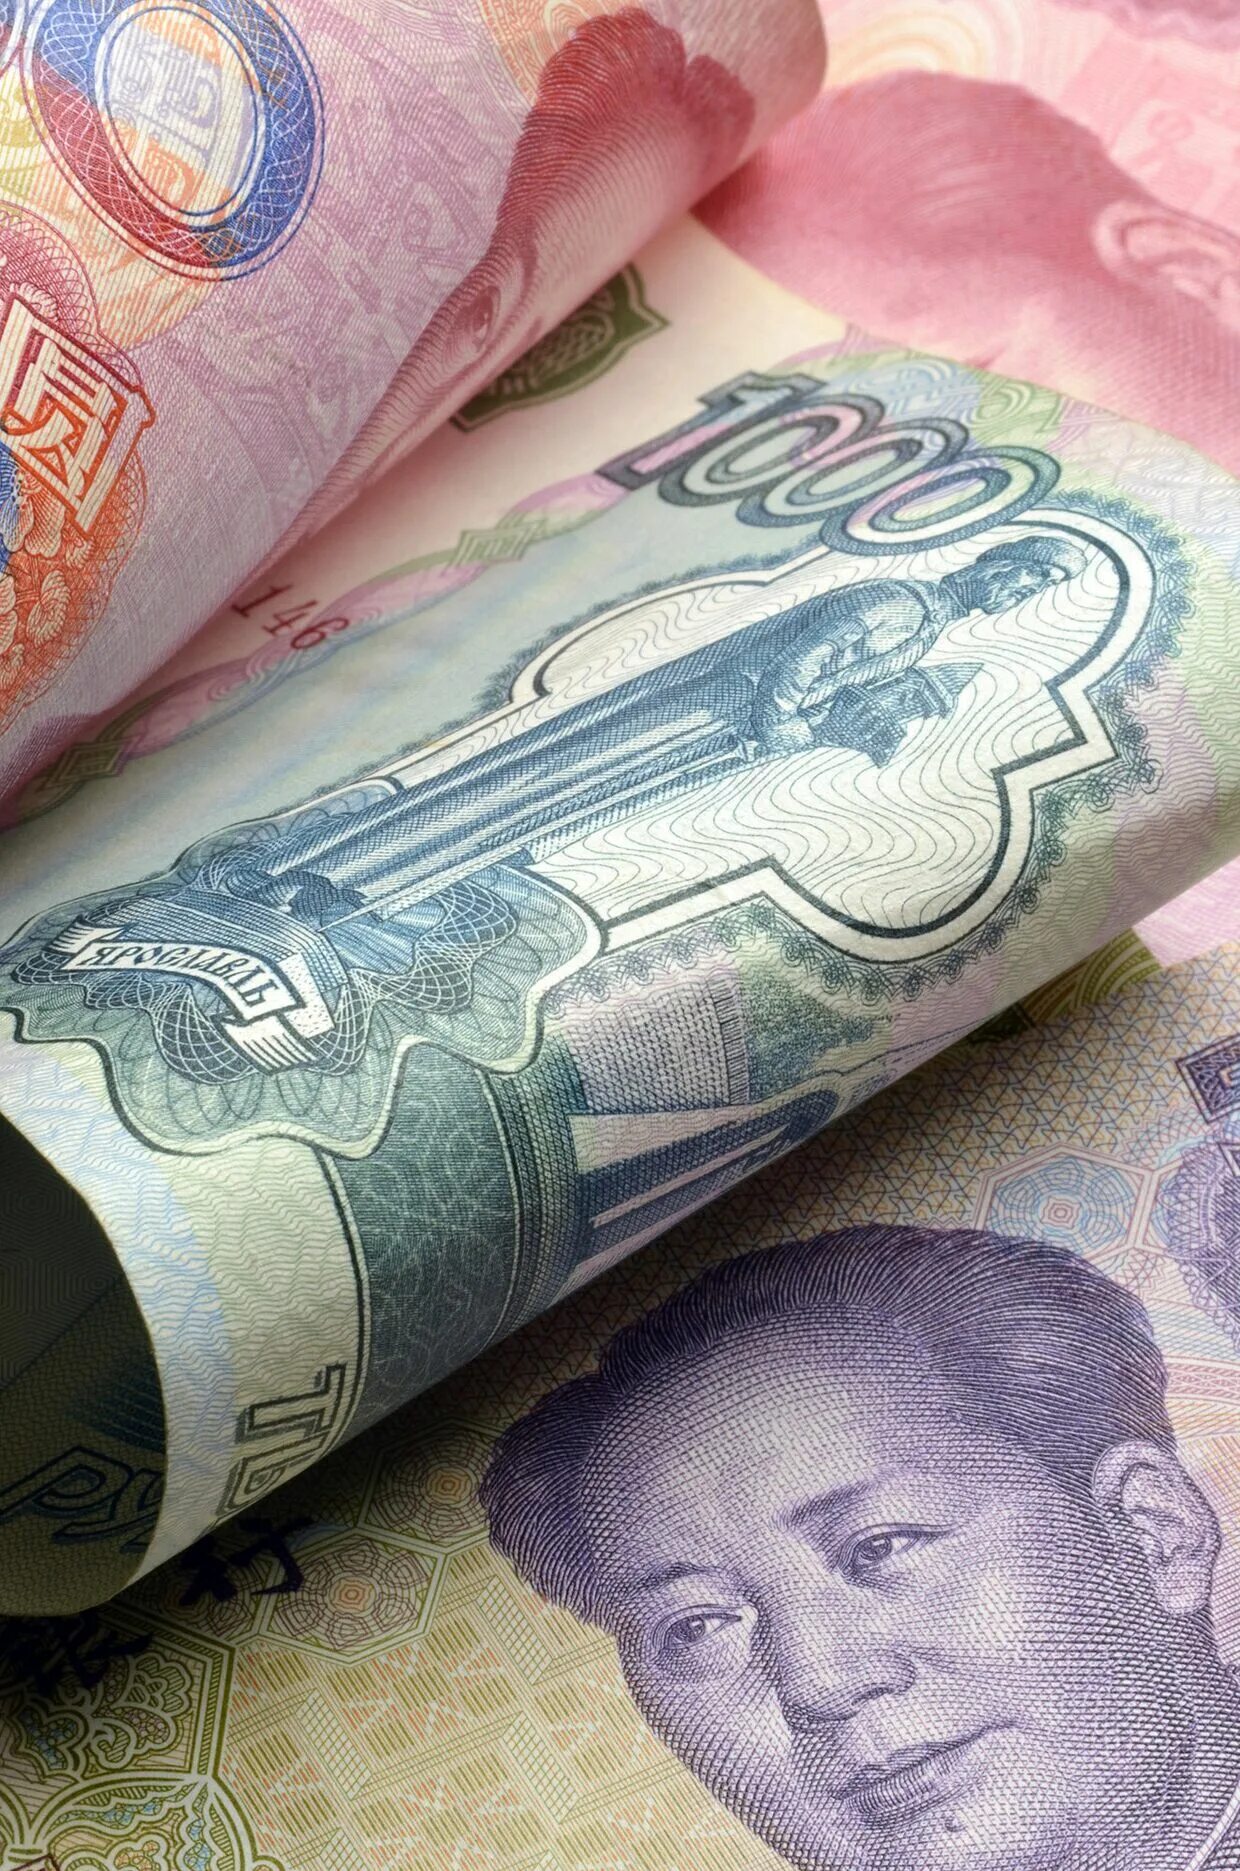 Китайские деньги. Валюта Китая. Китайский юань. Купюры Китая.